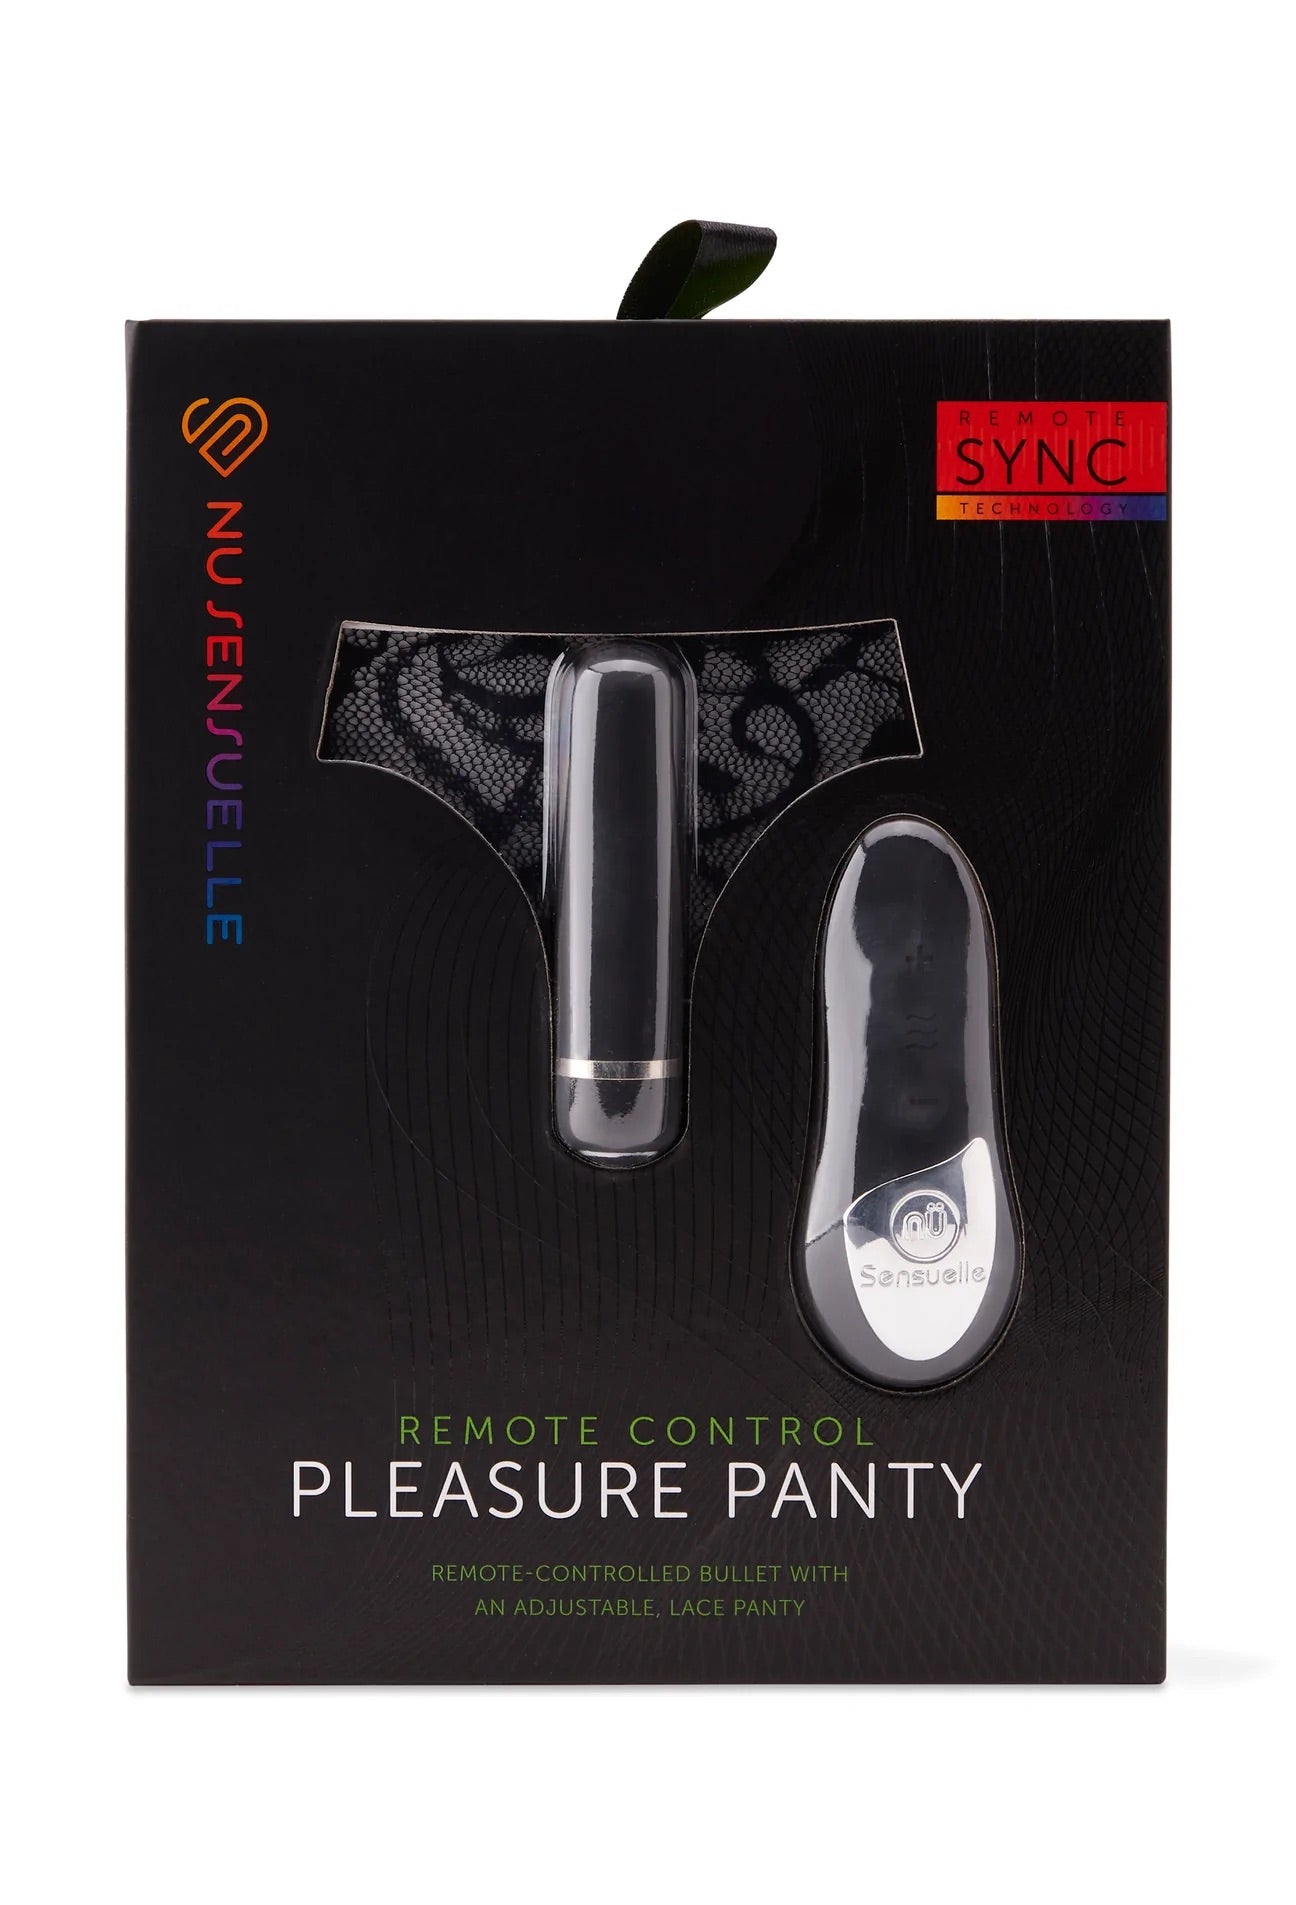 Nu Sensuelle - Pleasure Panty - 4 Colours - Feel the Power! - Boink Adult Boutique www.boinkmuskoka.com